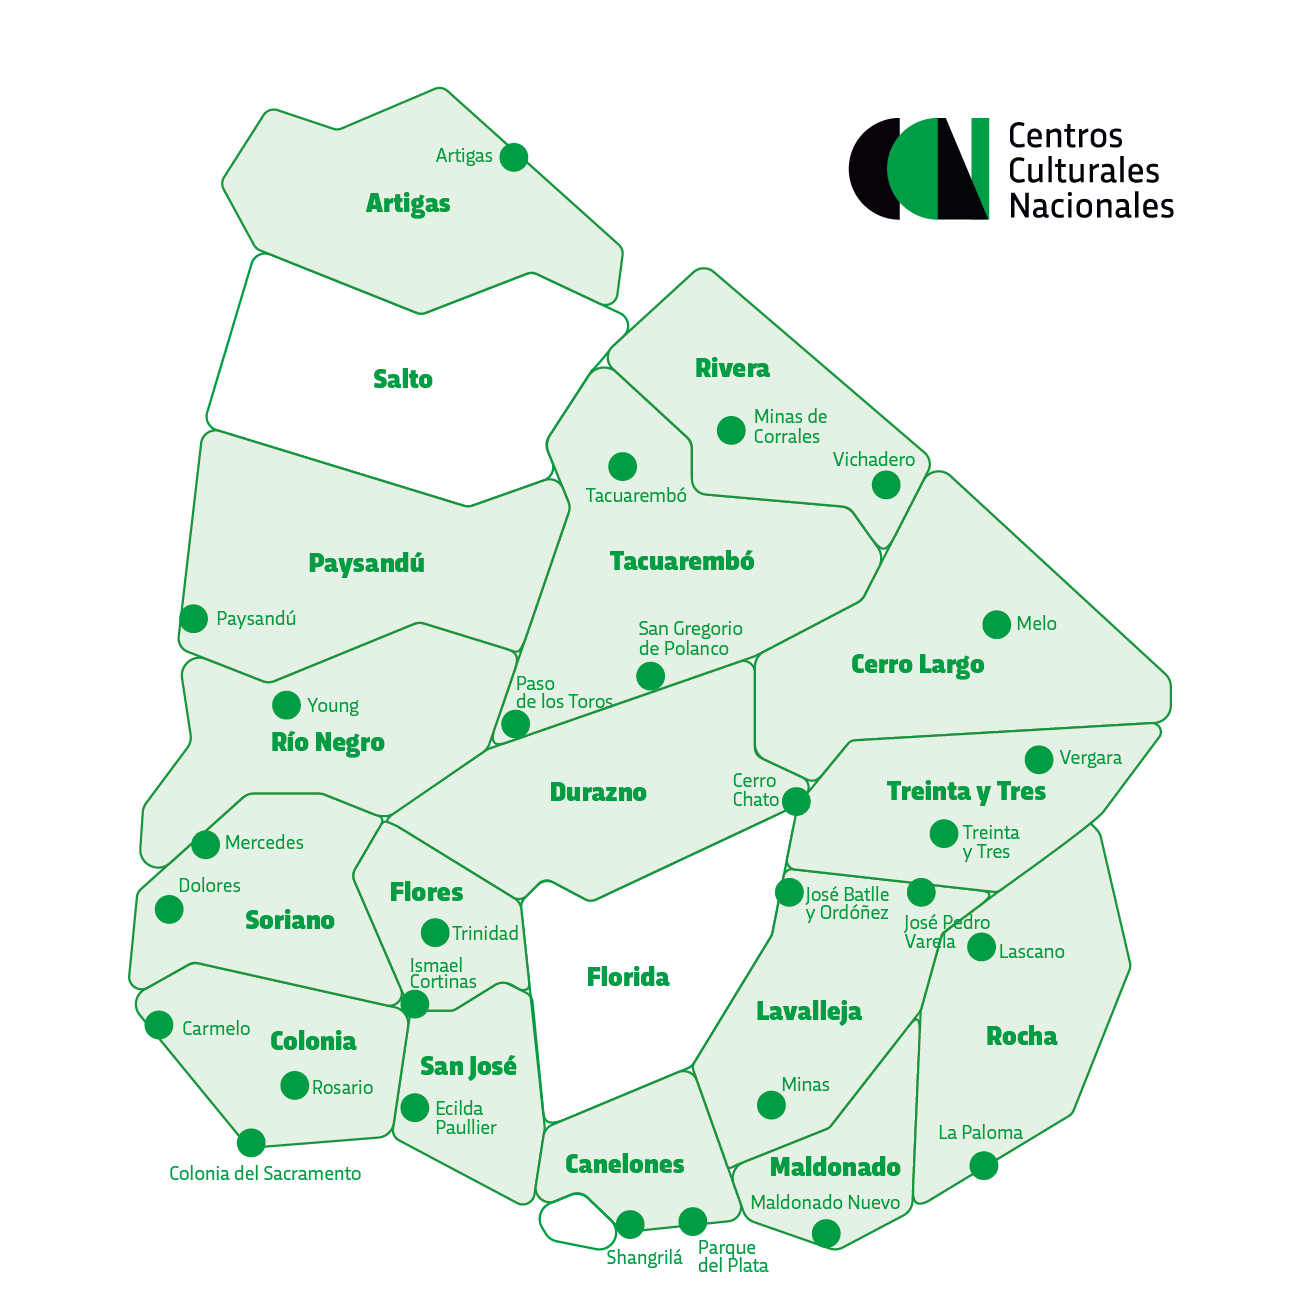 Mapa Centros Culturales Nacionales